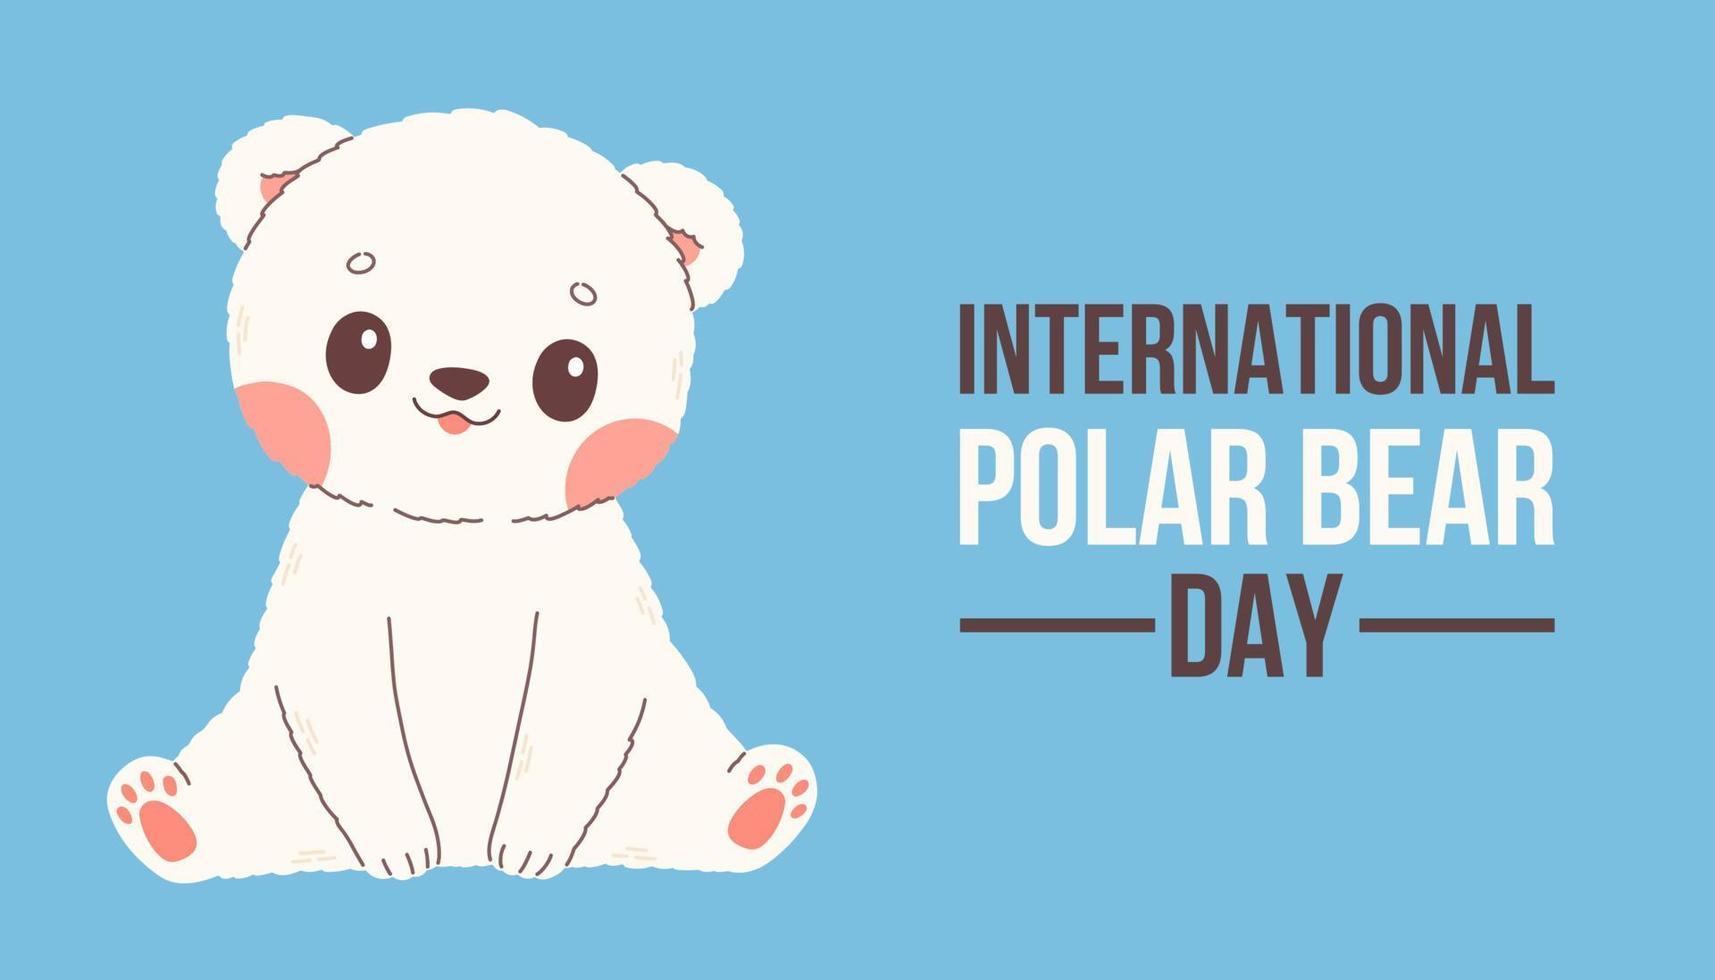 cartaz de vetor do dia internacional do urso polar, banner, design de impressão ou cartão de felicitações com desenho bonito bebê urso polar